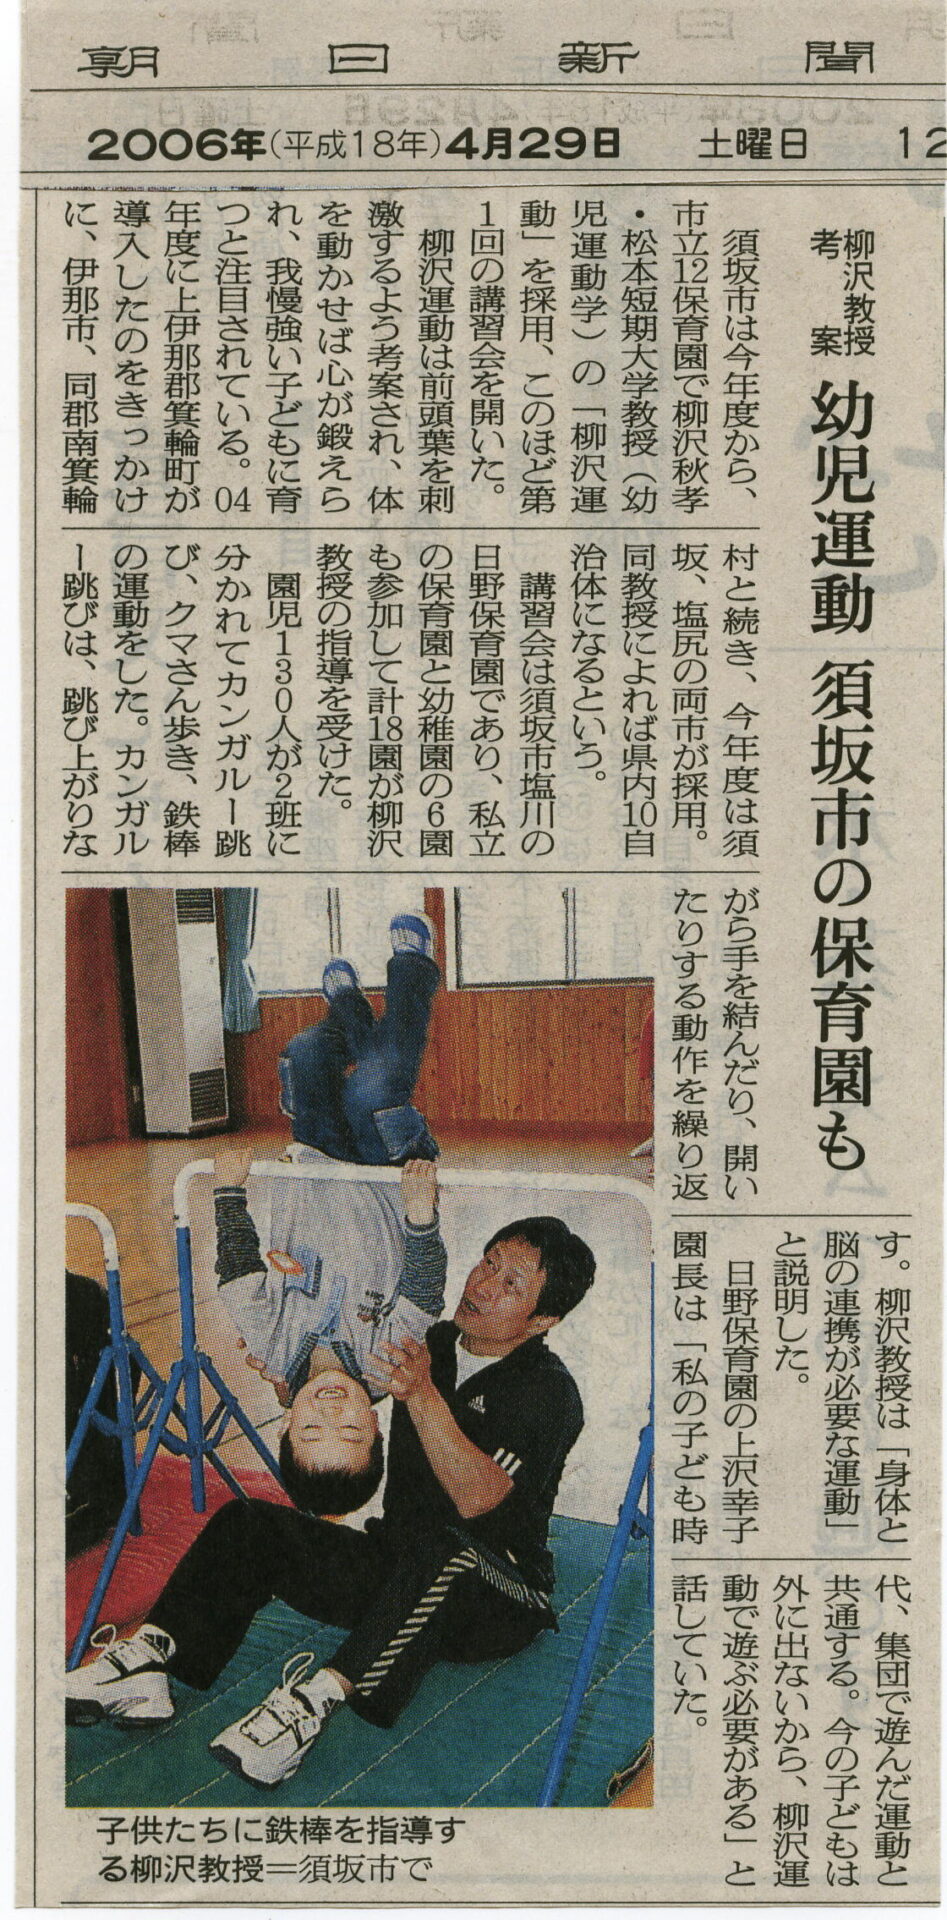 2006-04-29朝日新聞